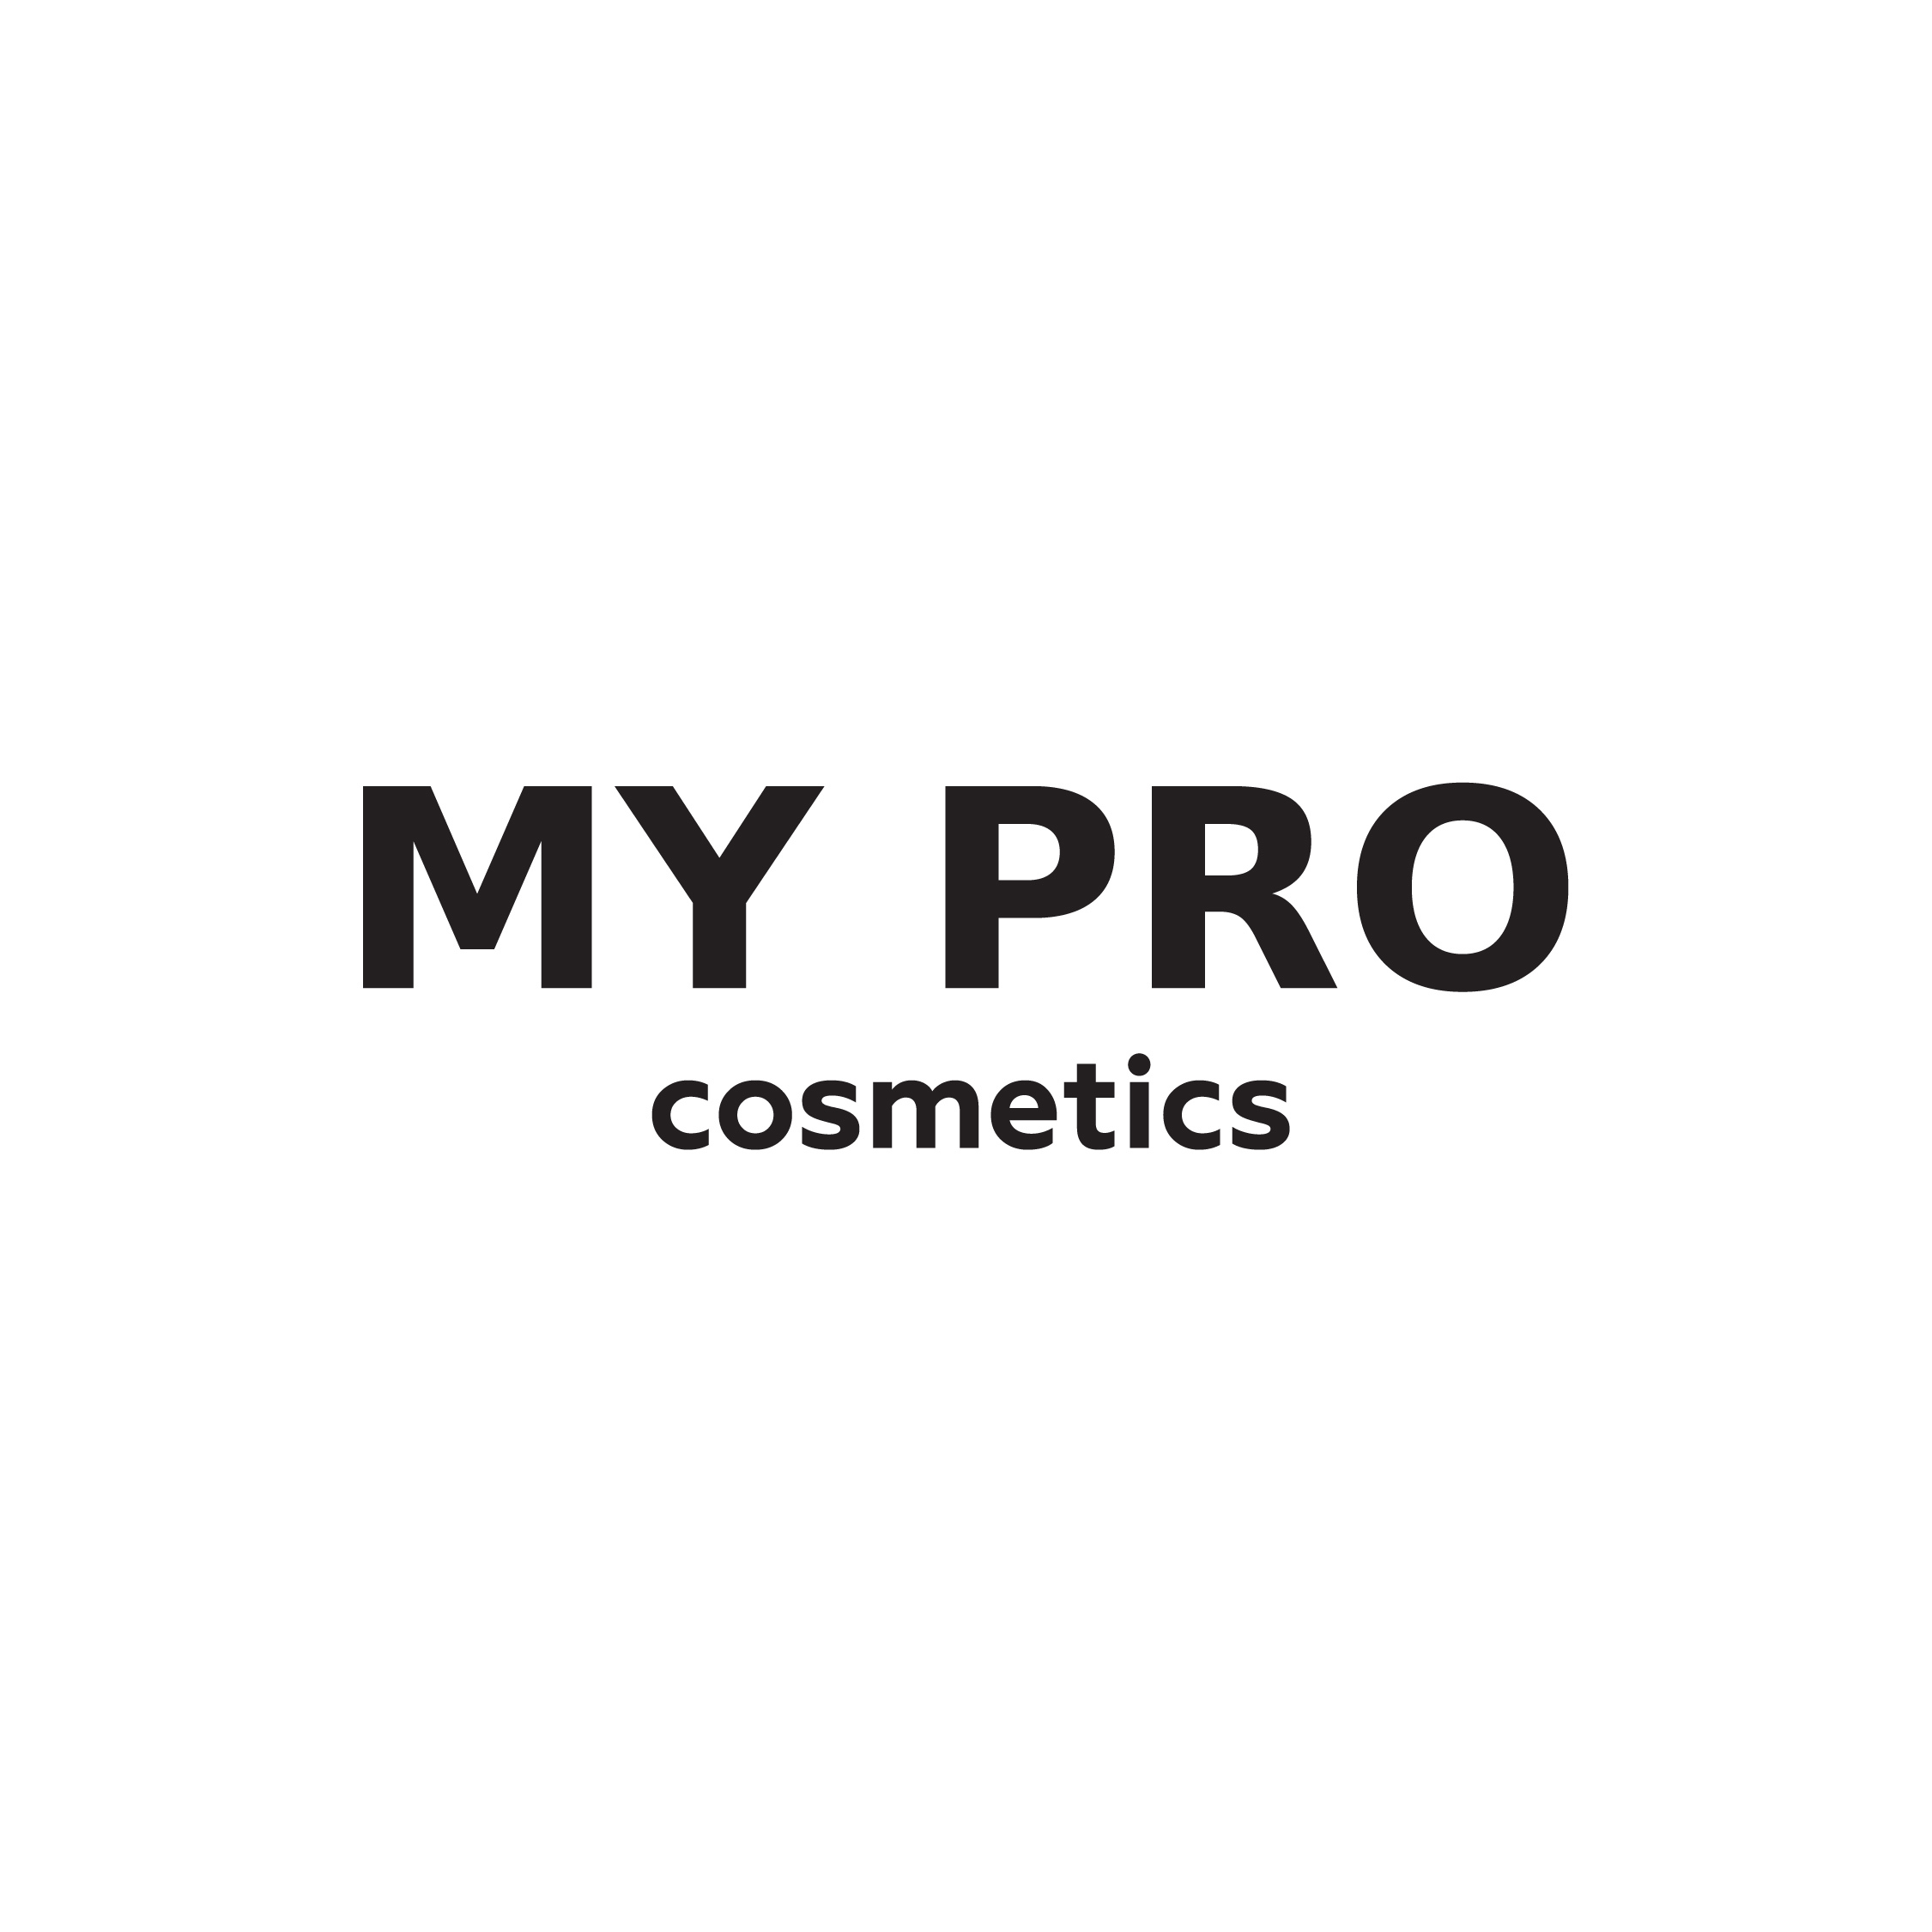 MY PRO cosmetics